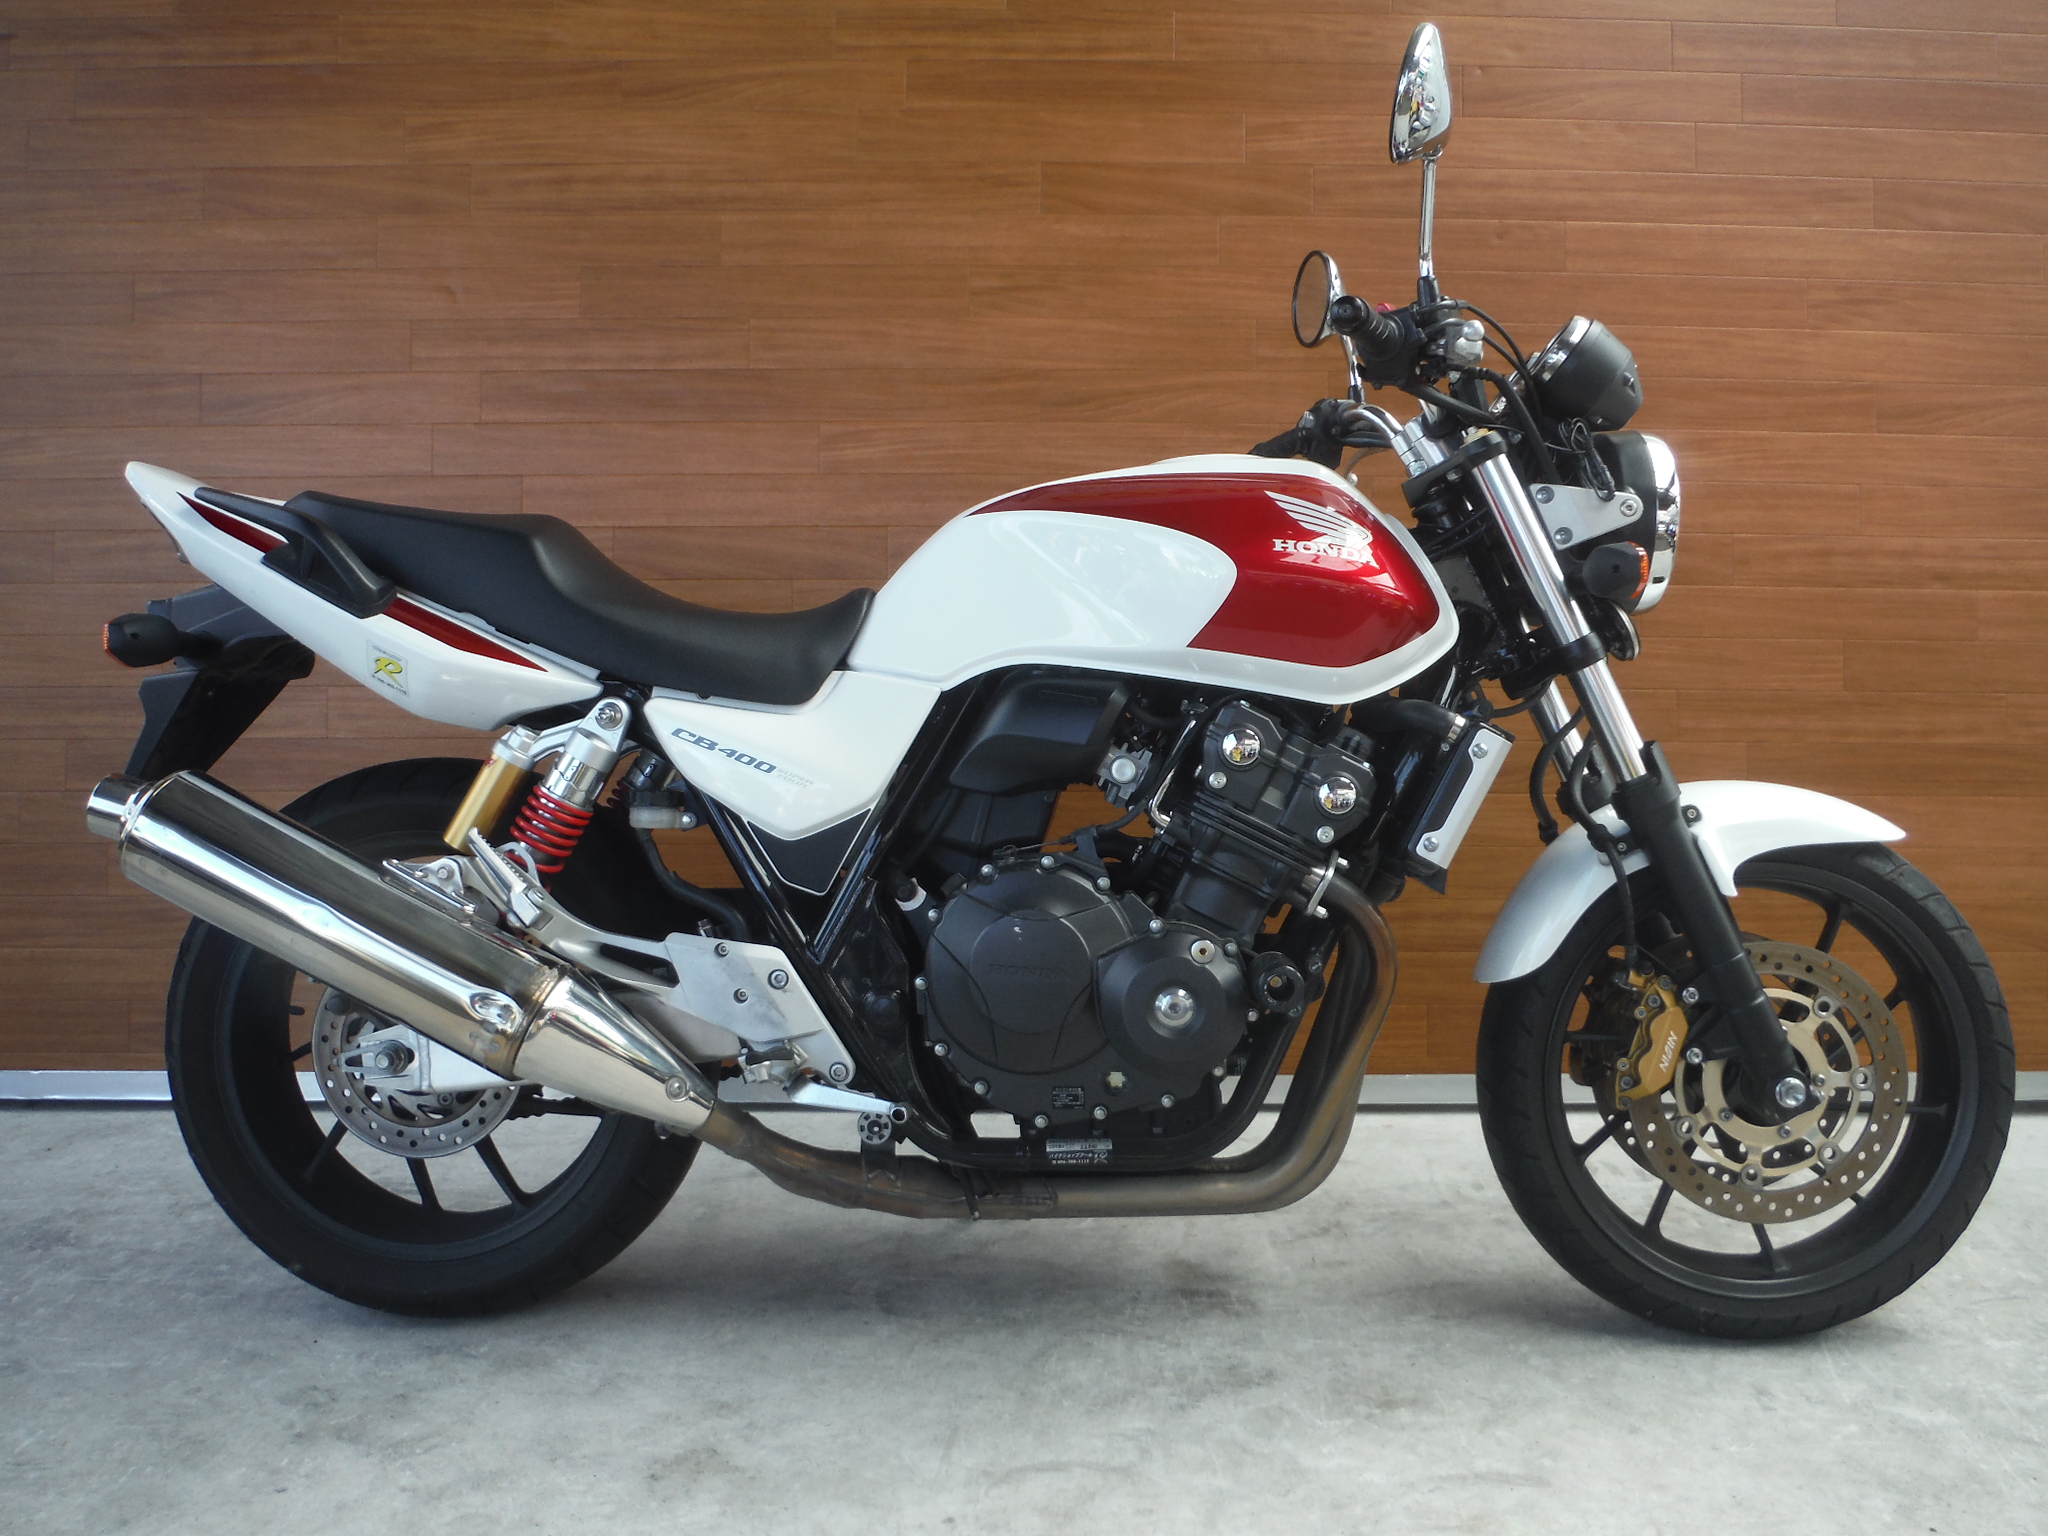 熊本中古車バイク情報 ホンダ Cb400sf 400 14年モデル 白赤 熊本のバイクショップ アール バイク の新車 中古車販売や買取 レンタルバイクのことならおまかせください